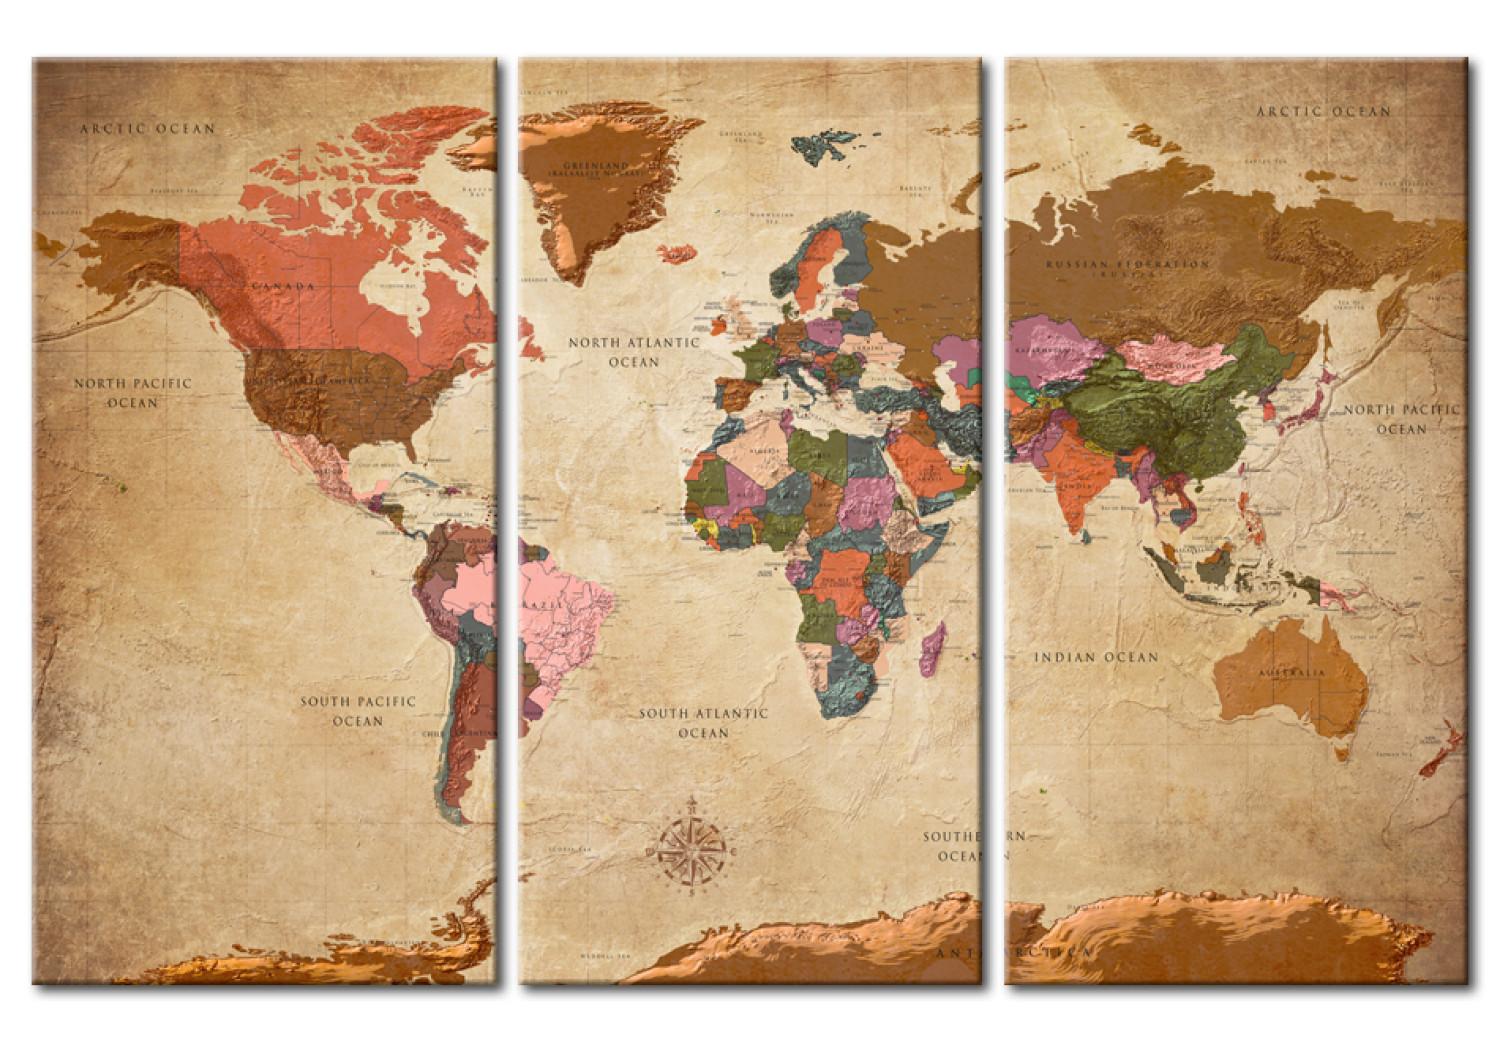 Tablero decorativo en corcho Maps: Brown Elegance [Cork Map]